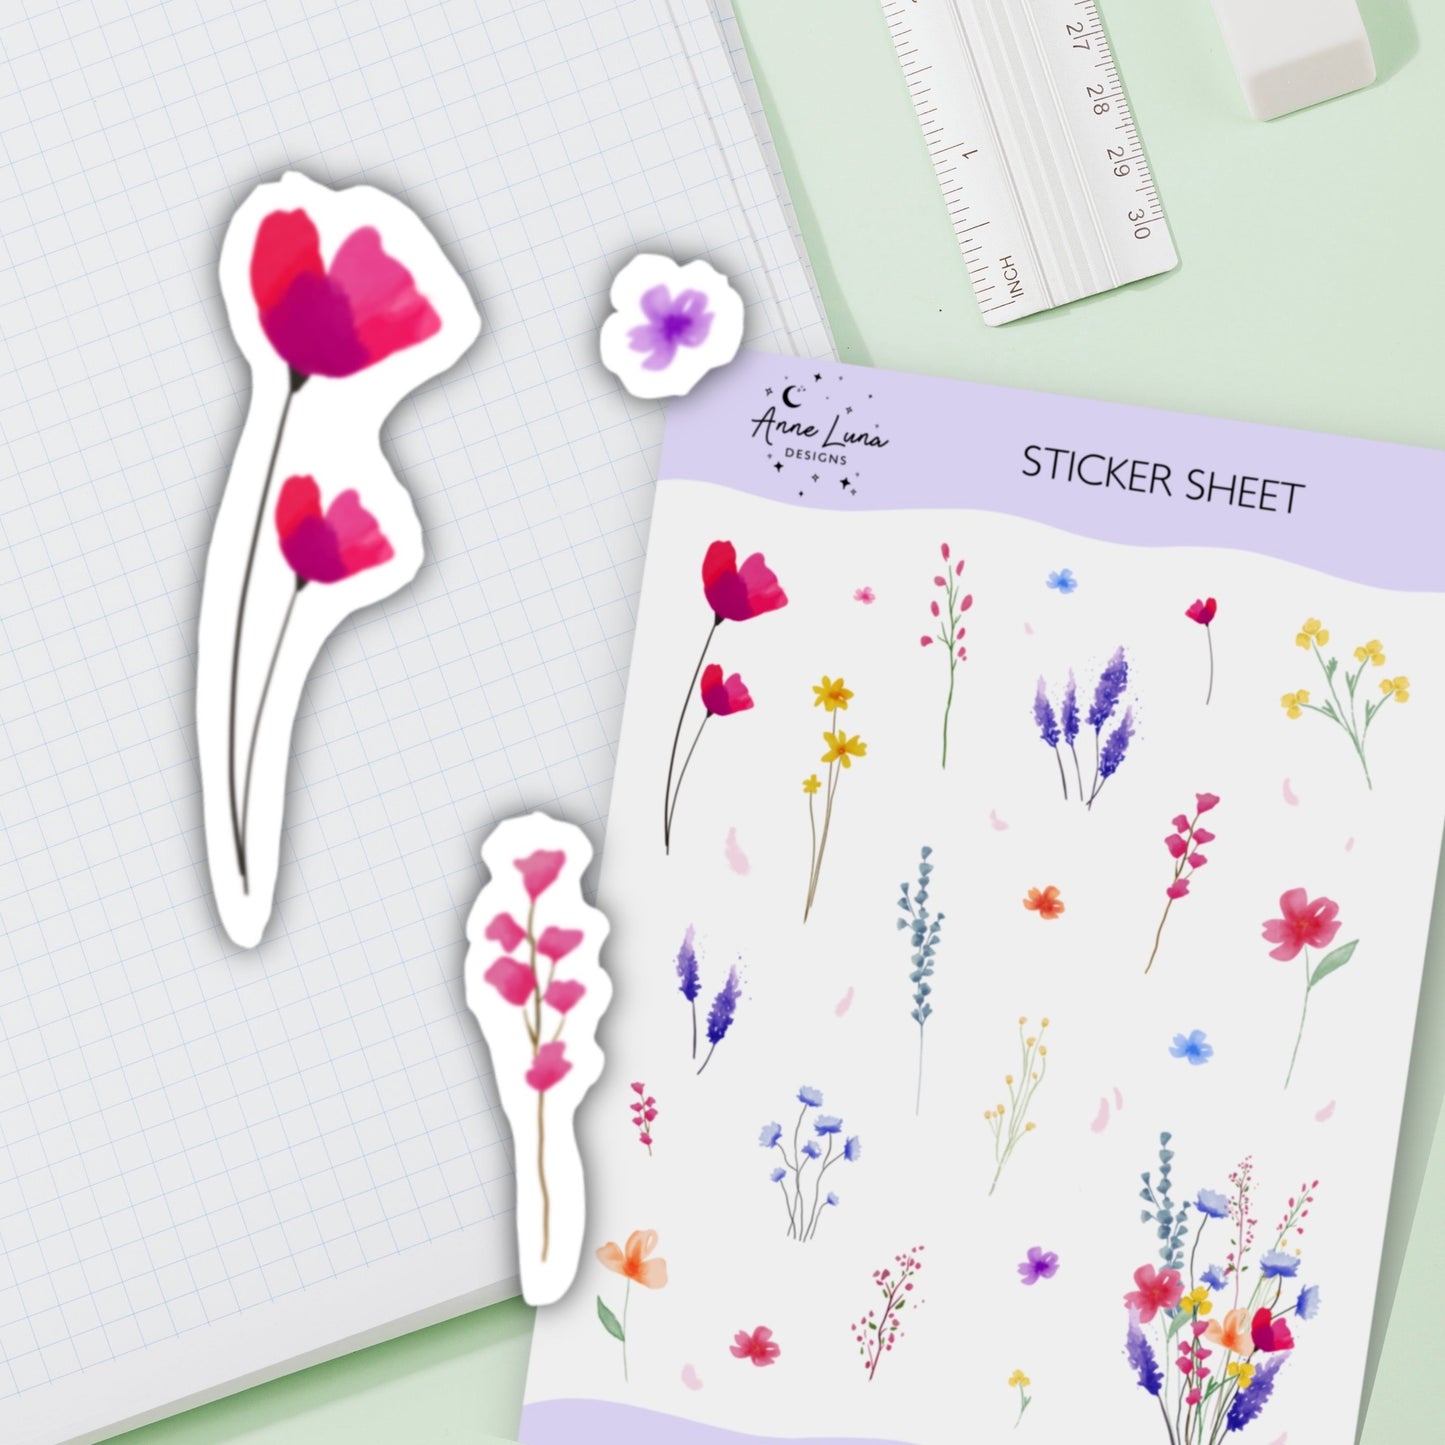 Wild Flowers Sticker Sheet for Planner or Bullet Journal